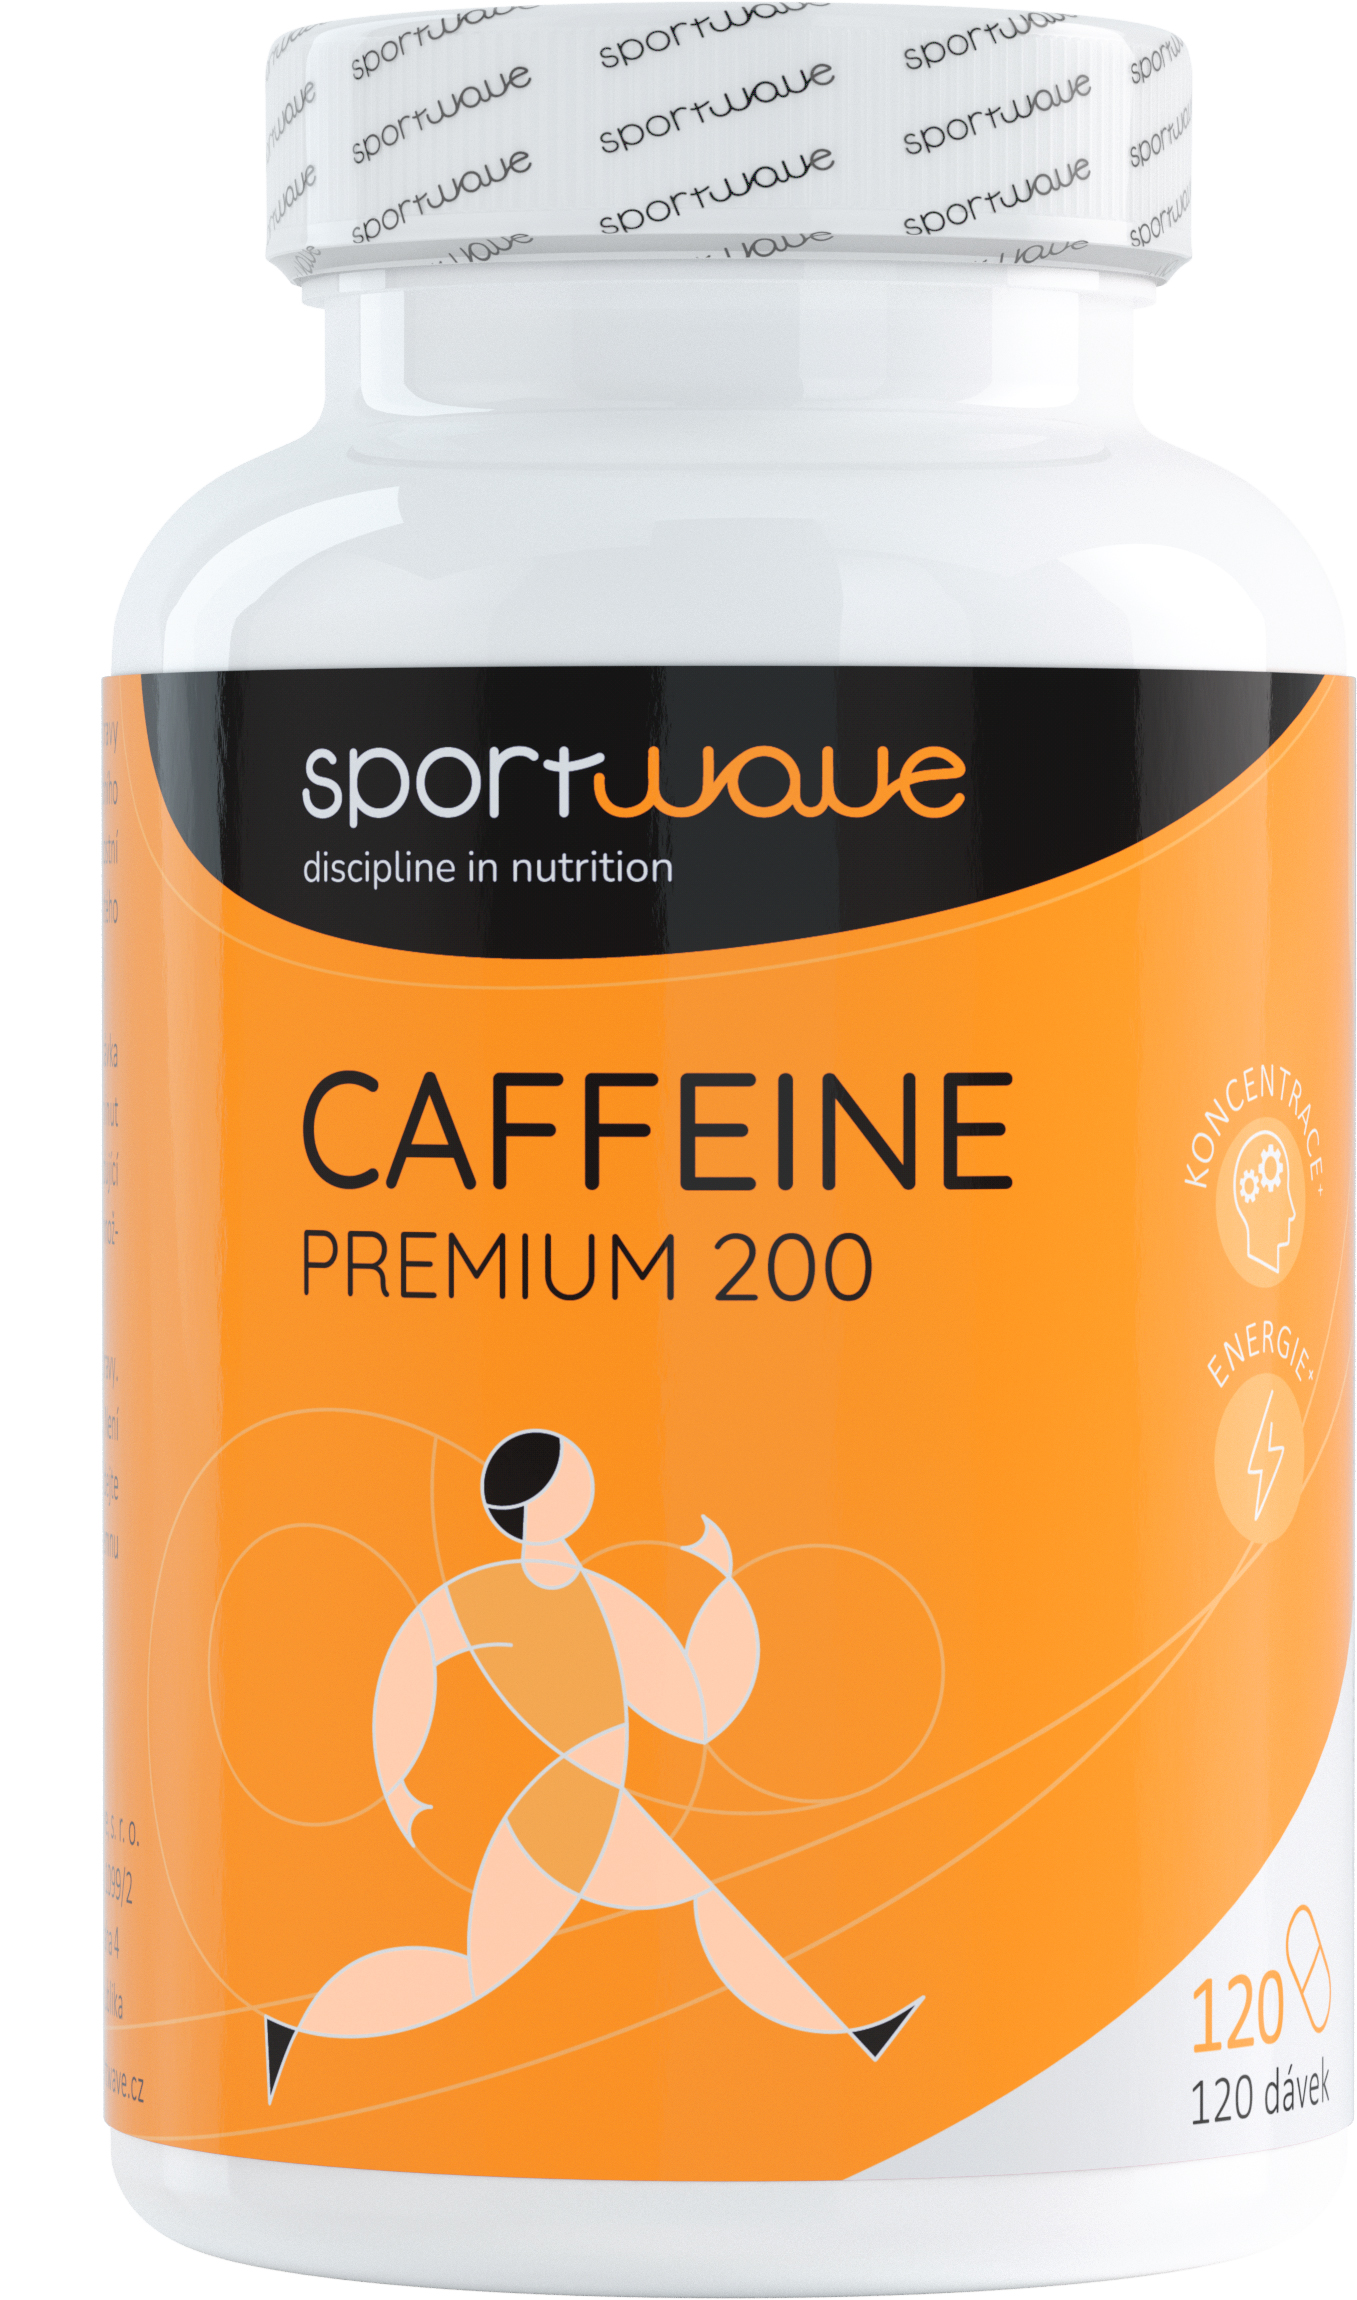 CAFFEINE PREMIUM 200